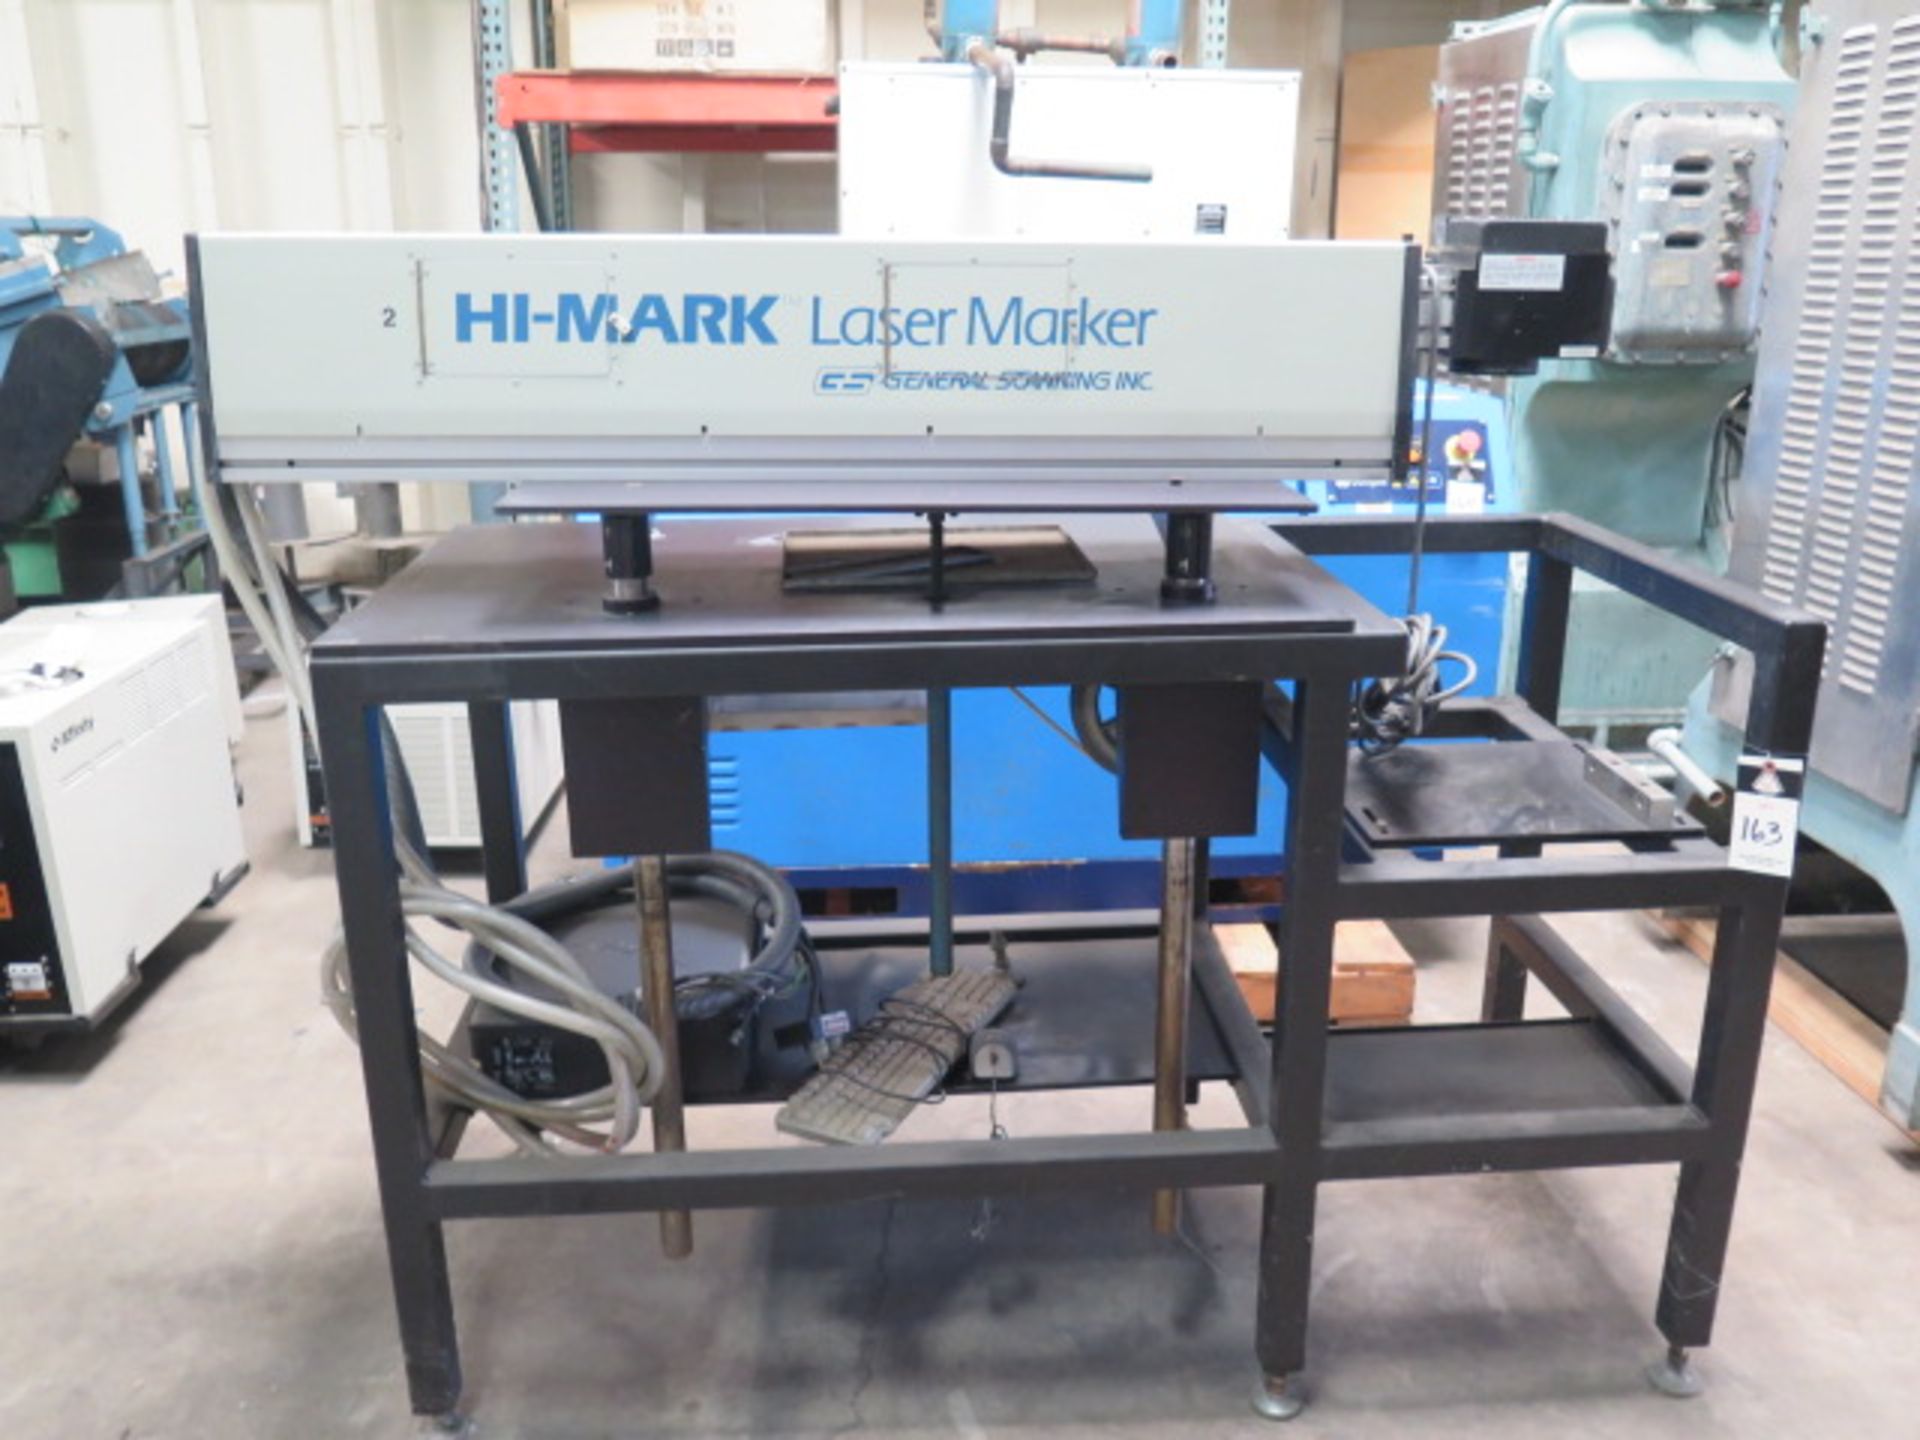 General Scanning Inc. “Hi-Mark” mdl. HM400 Laser Engraving System s/n 94490212 SOLD AS-IS